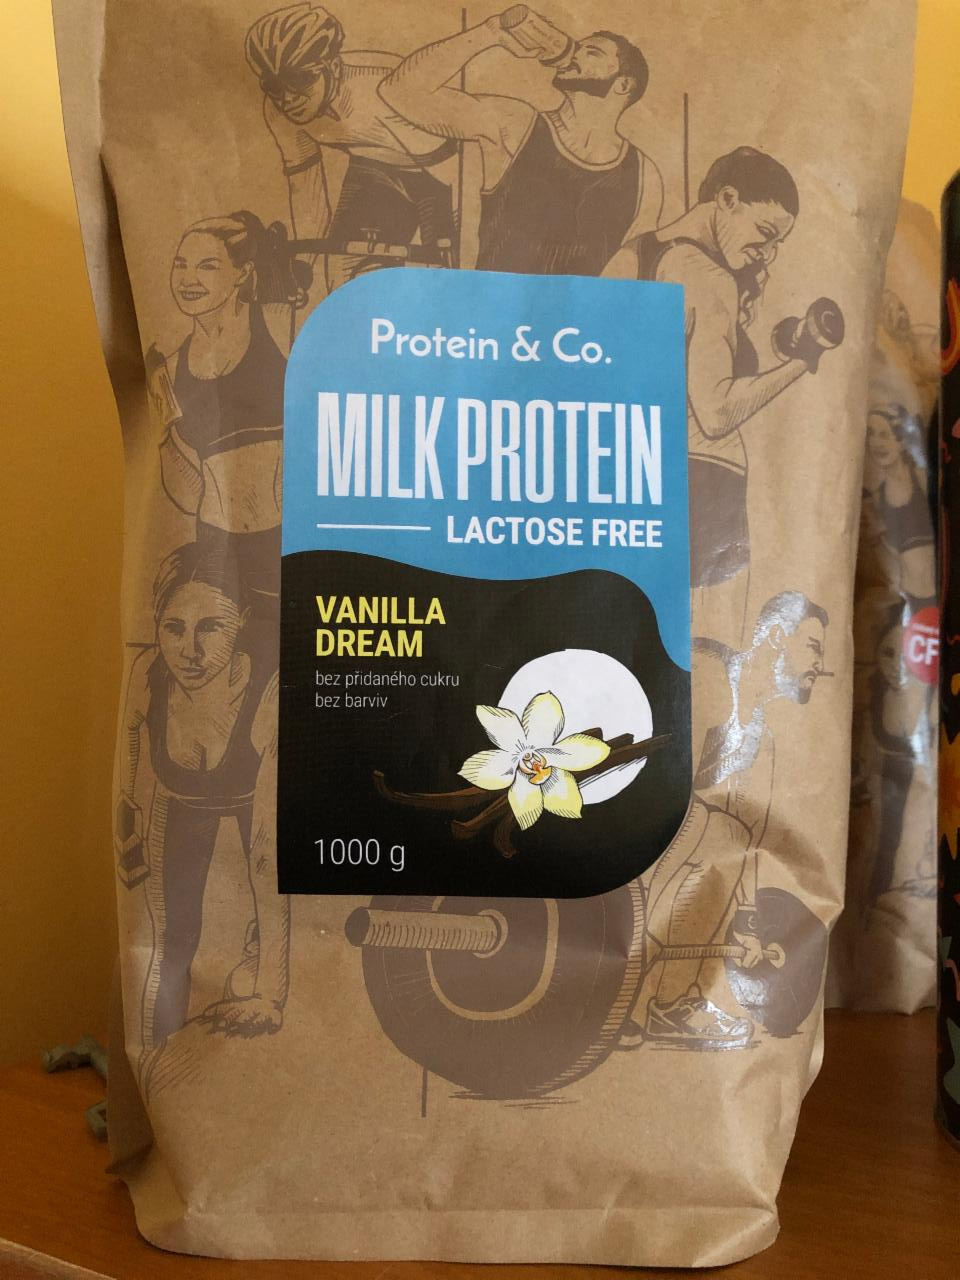 Fotografie - Milk Protein lactose free Vanilla dream Protein & Co.